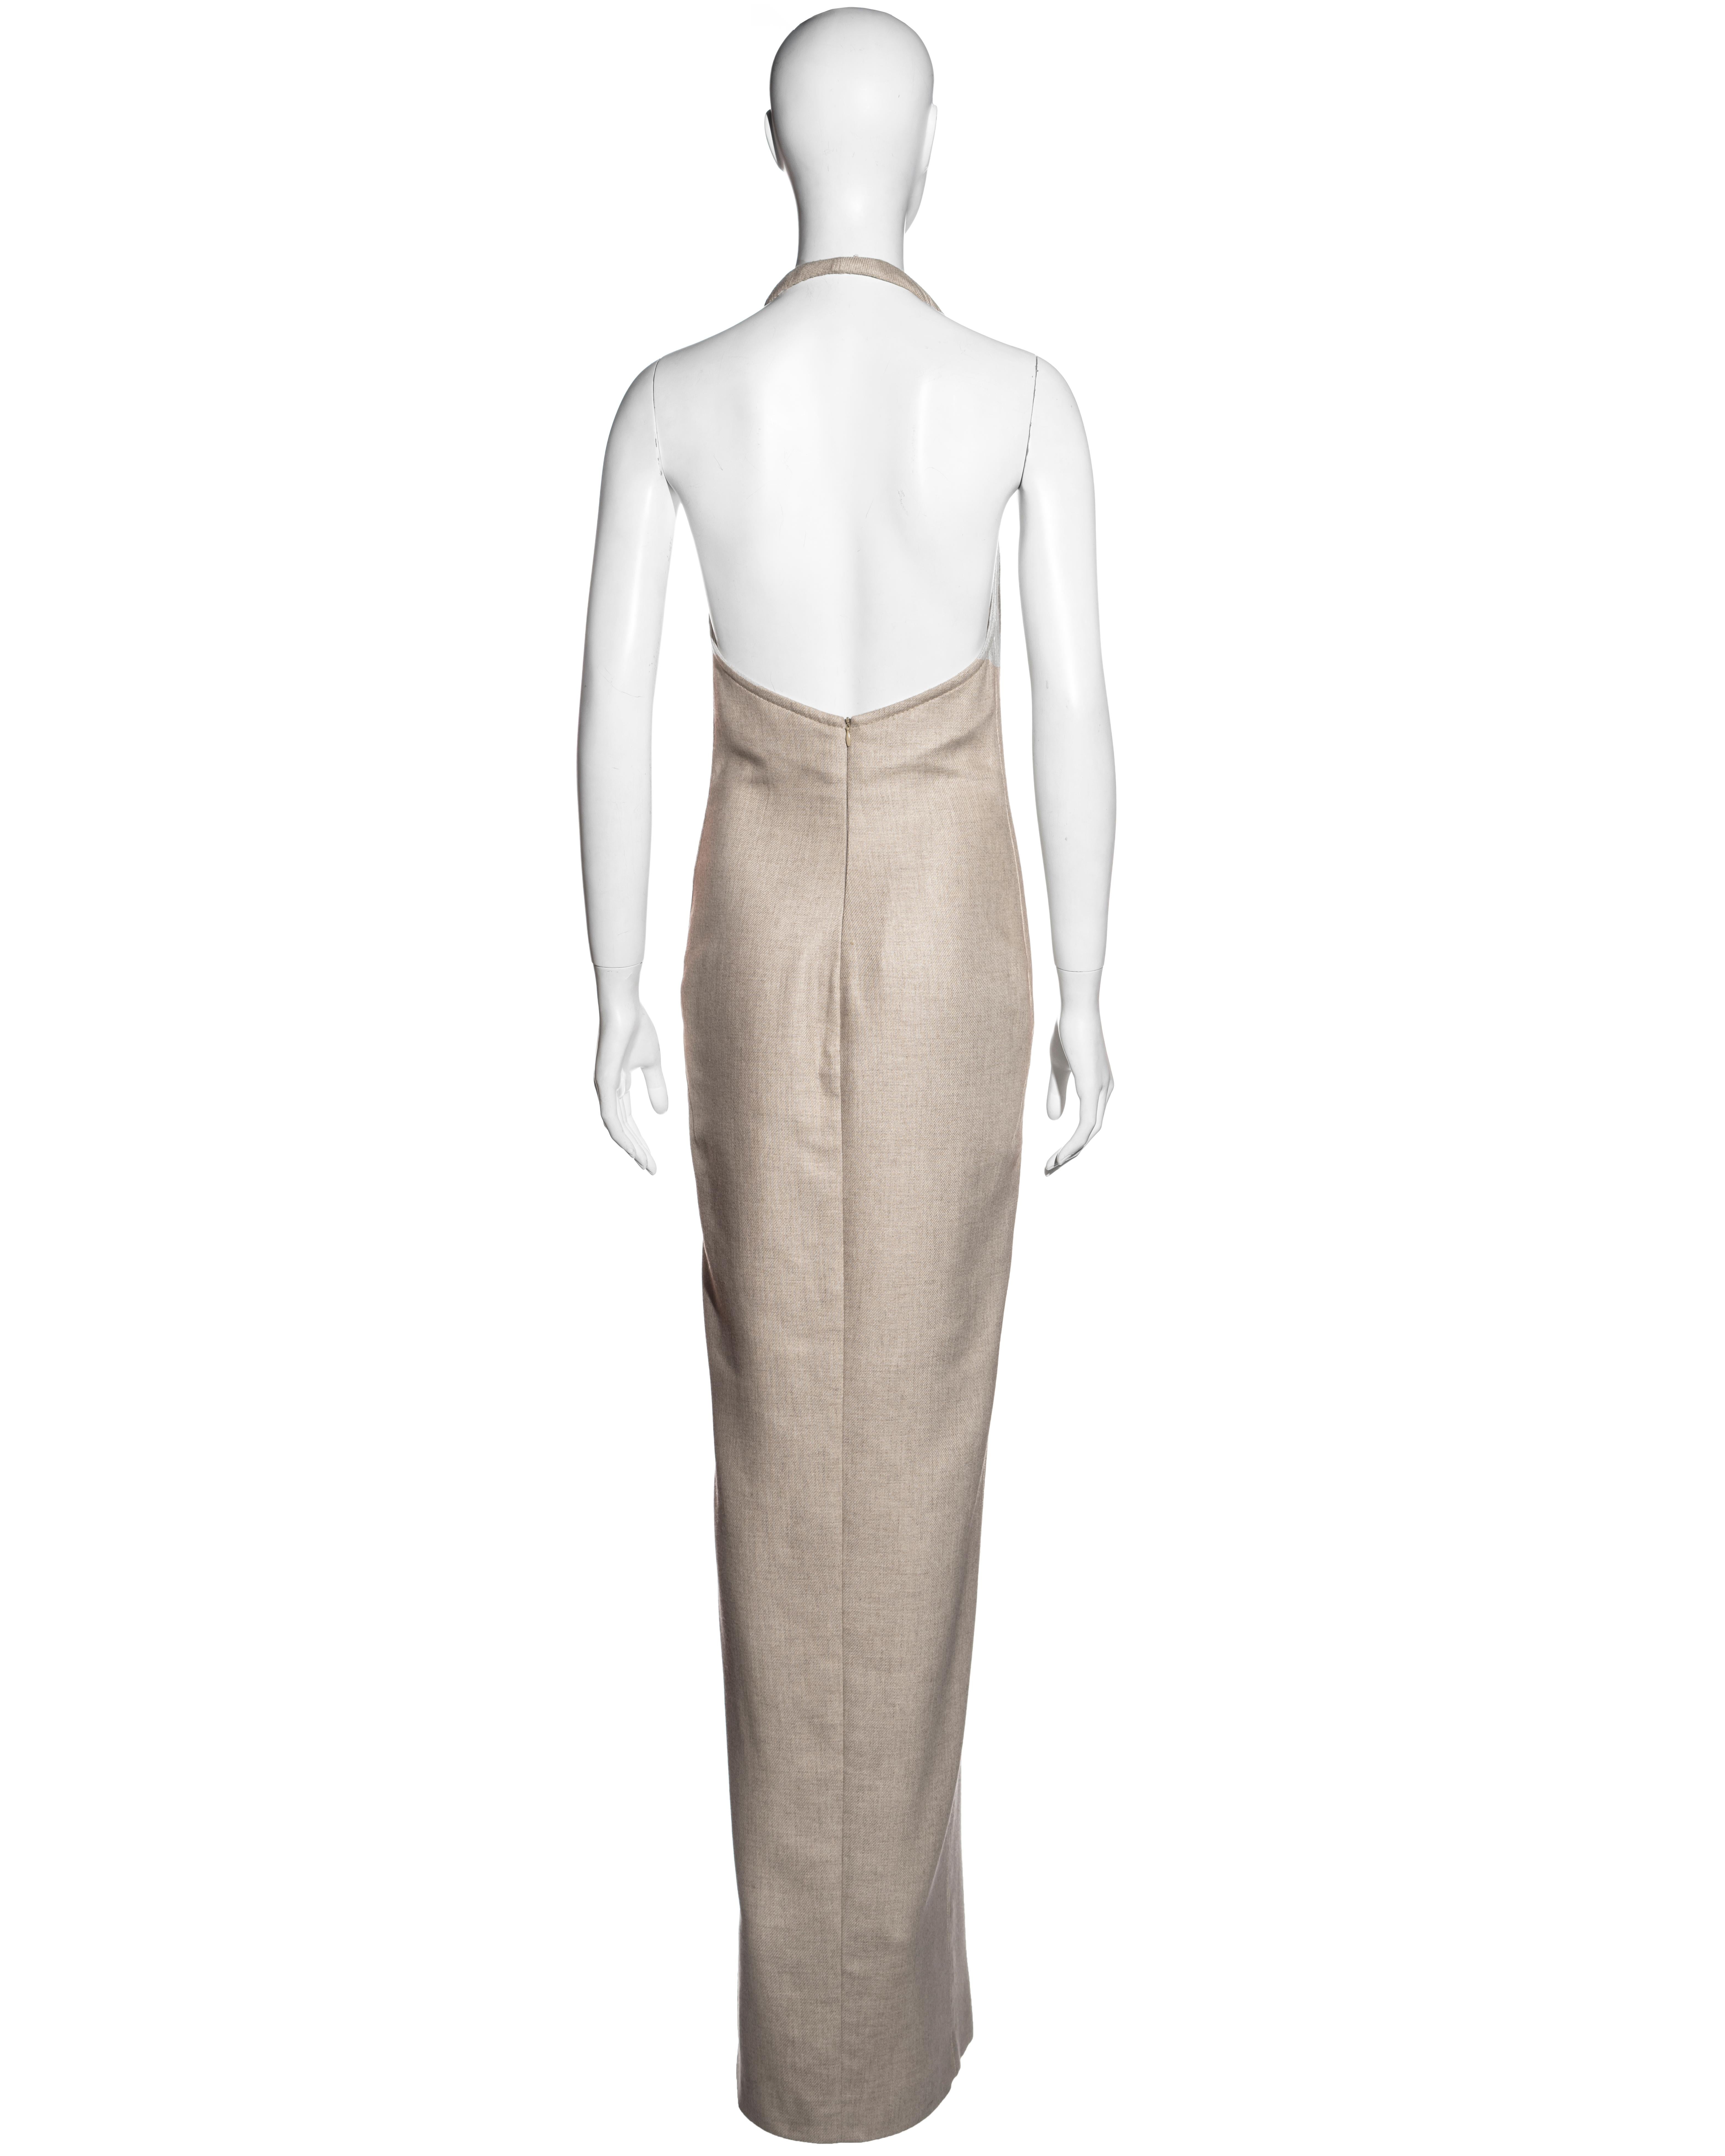 Gianfranco Ferre beige wool column dress, fw 1999 For Sale 1